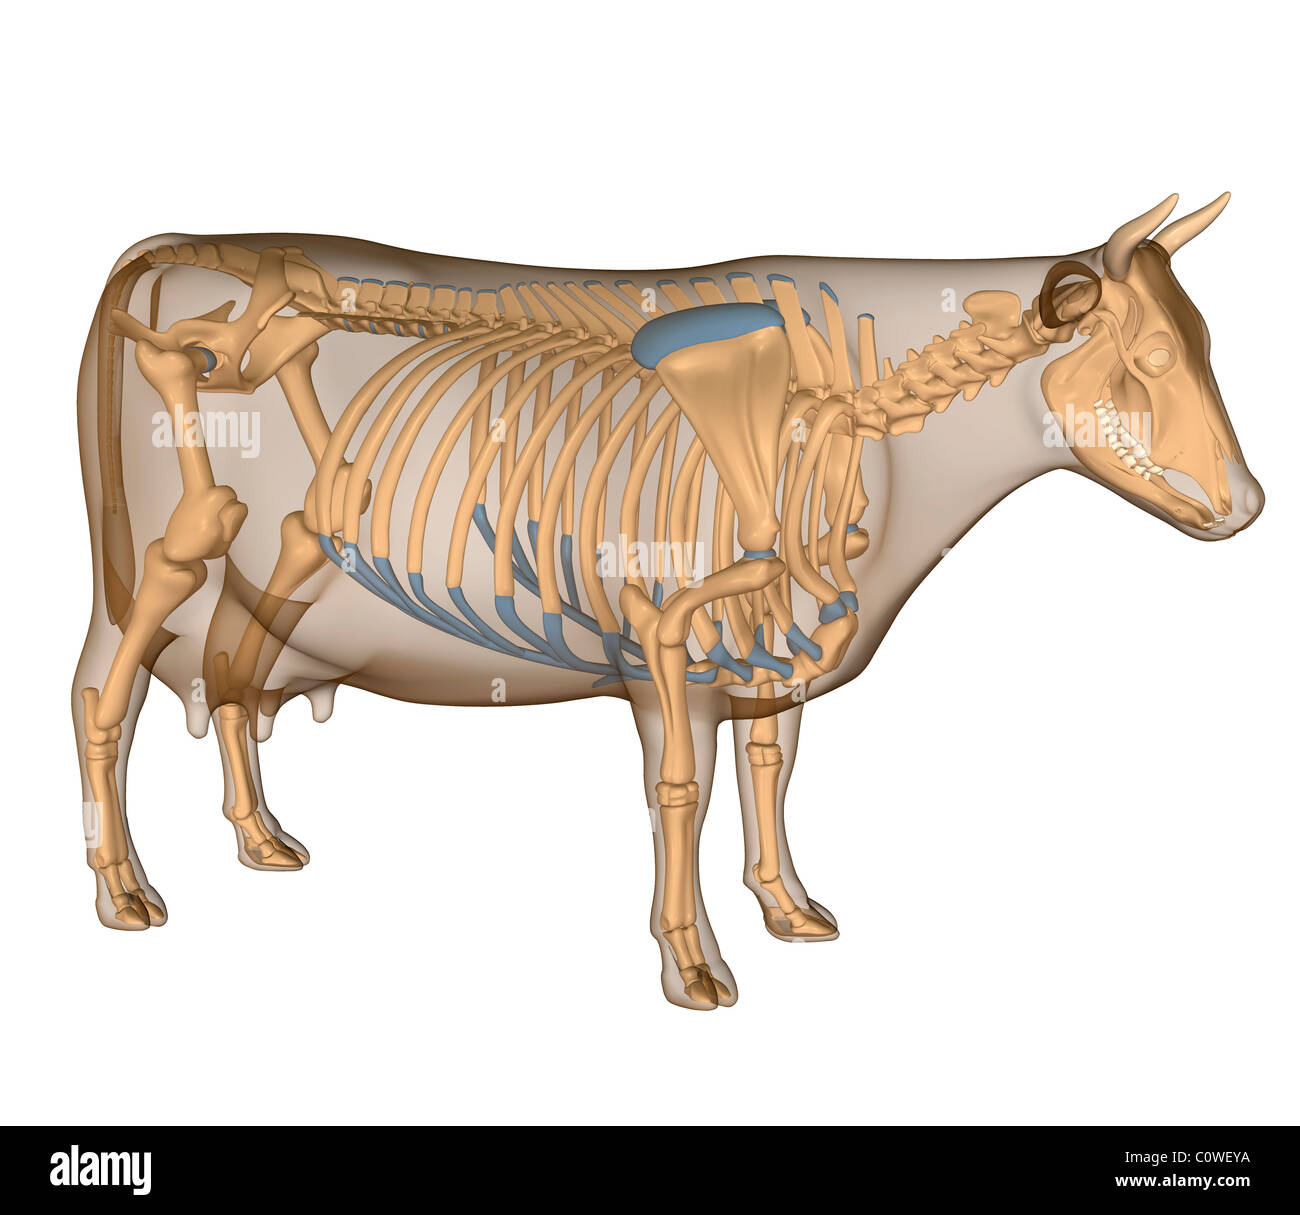 Anatomia dello scheletro di vacca Foto Stock